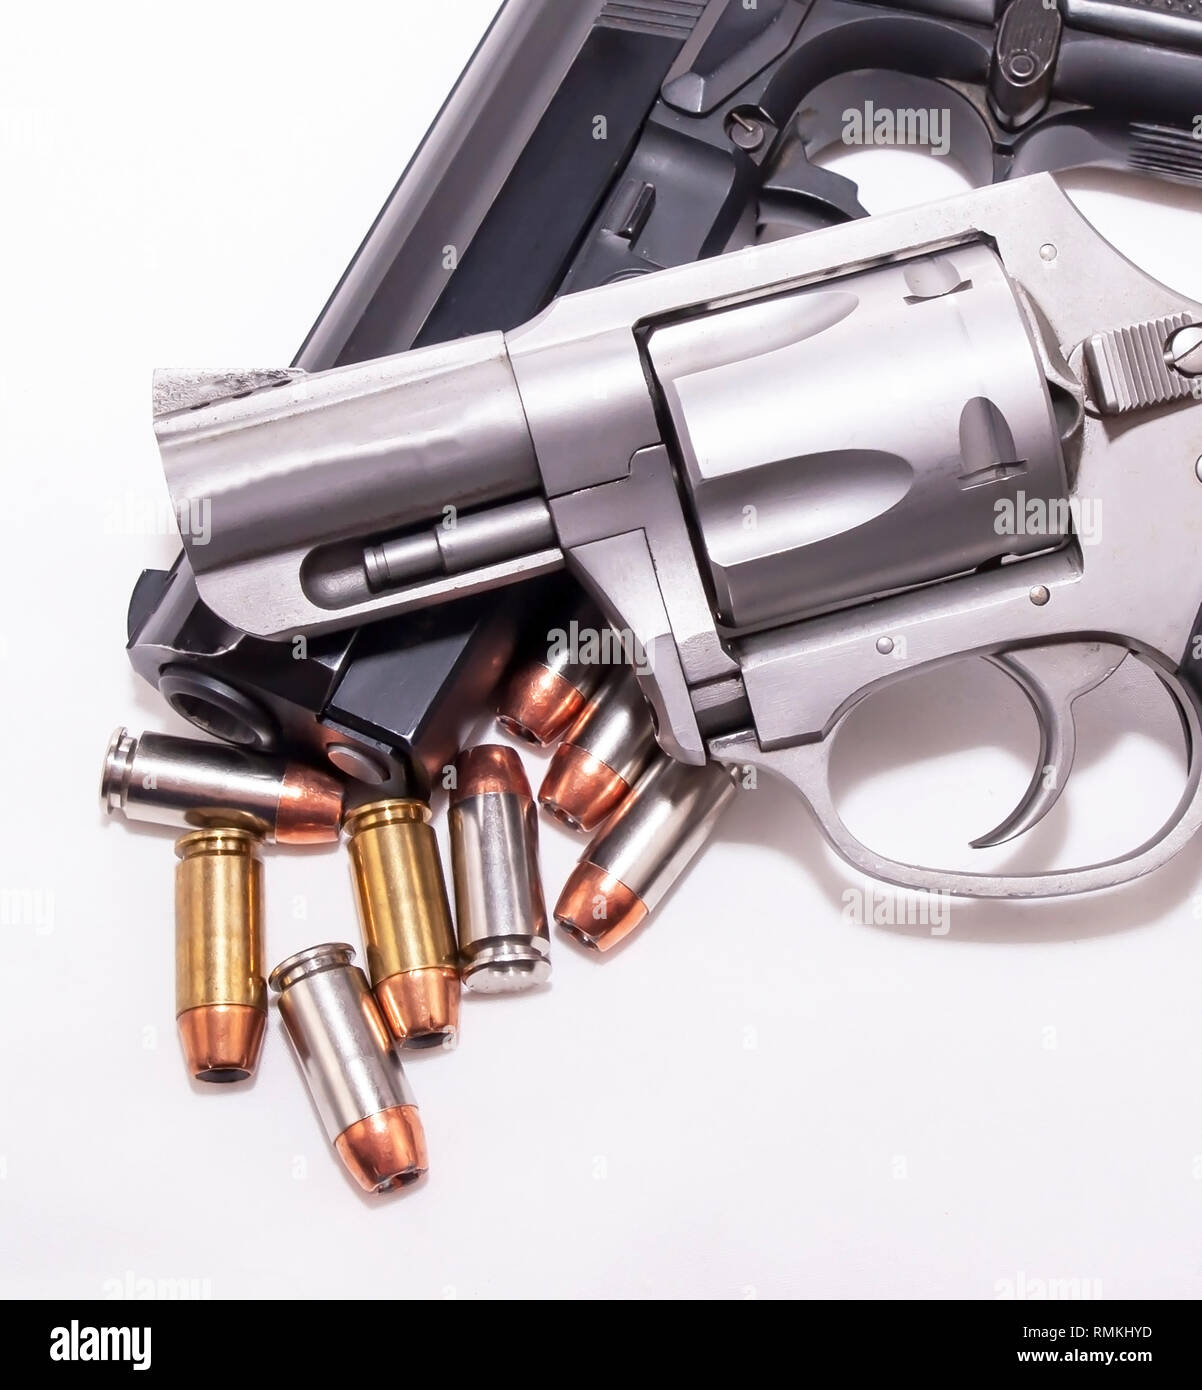 Eine 357 Magnum Revolver auf einem 40 Kaliber Pistole mit acht 40 Kaliber hollow point Kugeln auf weißem Hintergrund Stockfoto